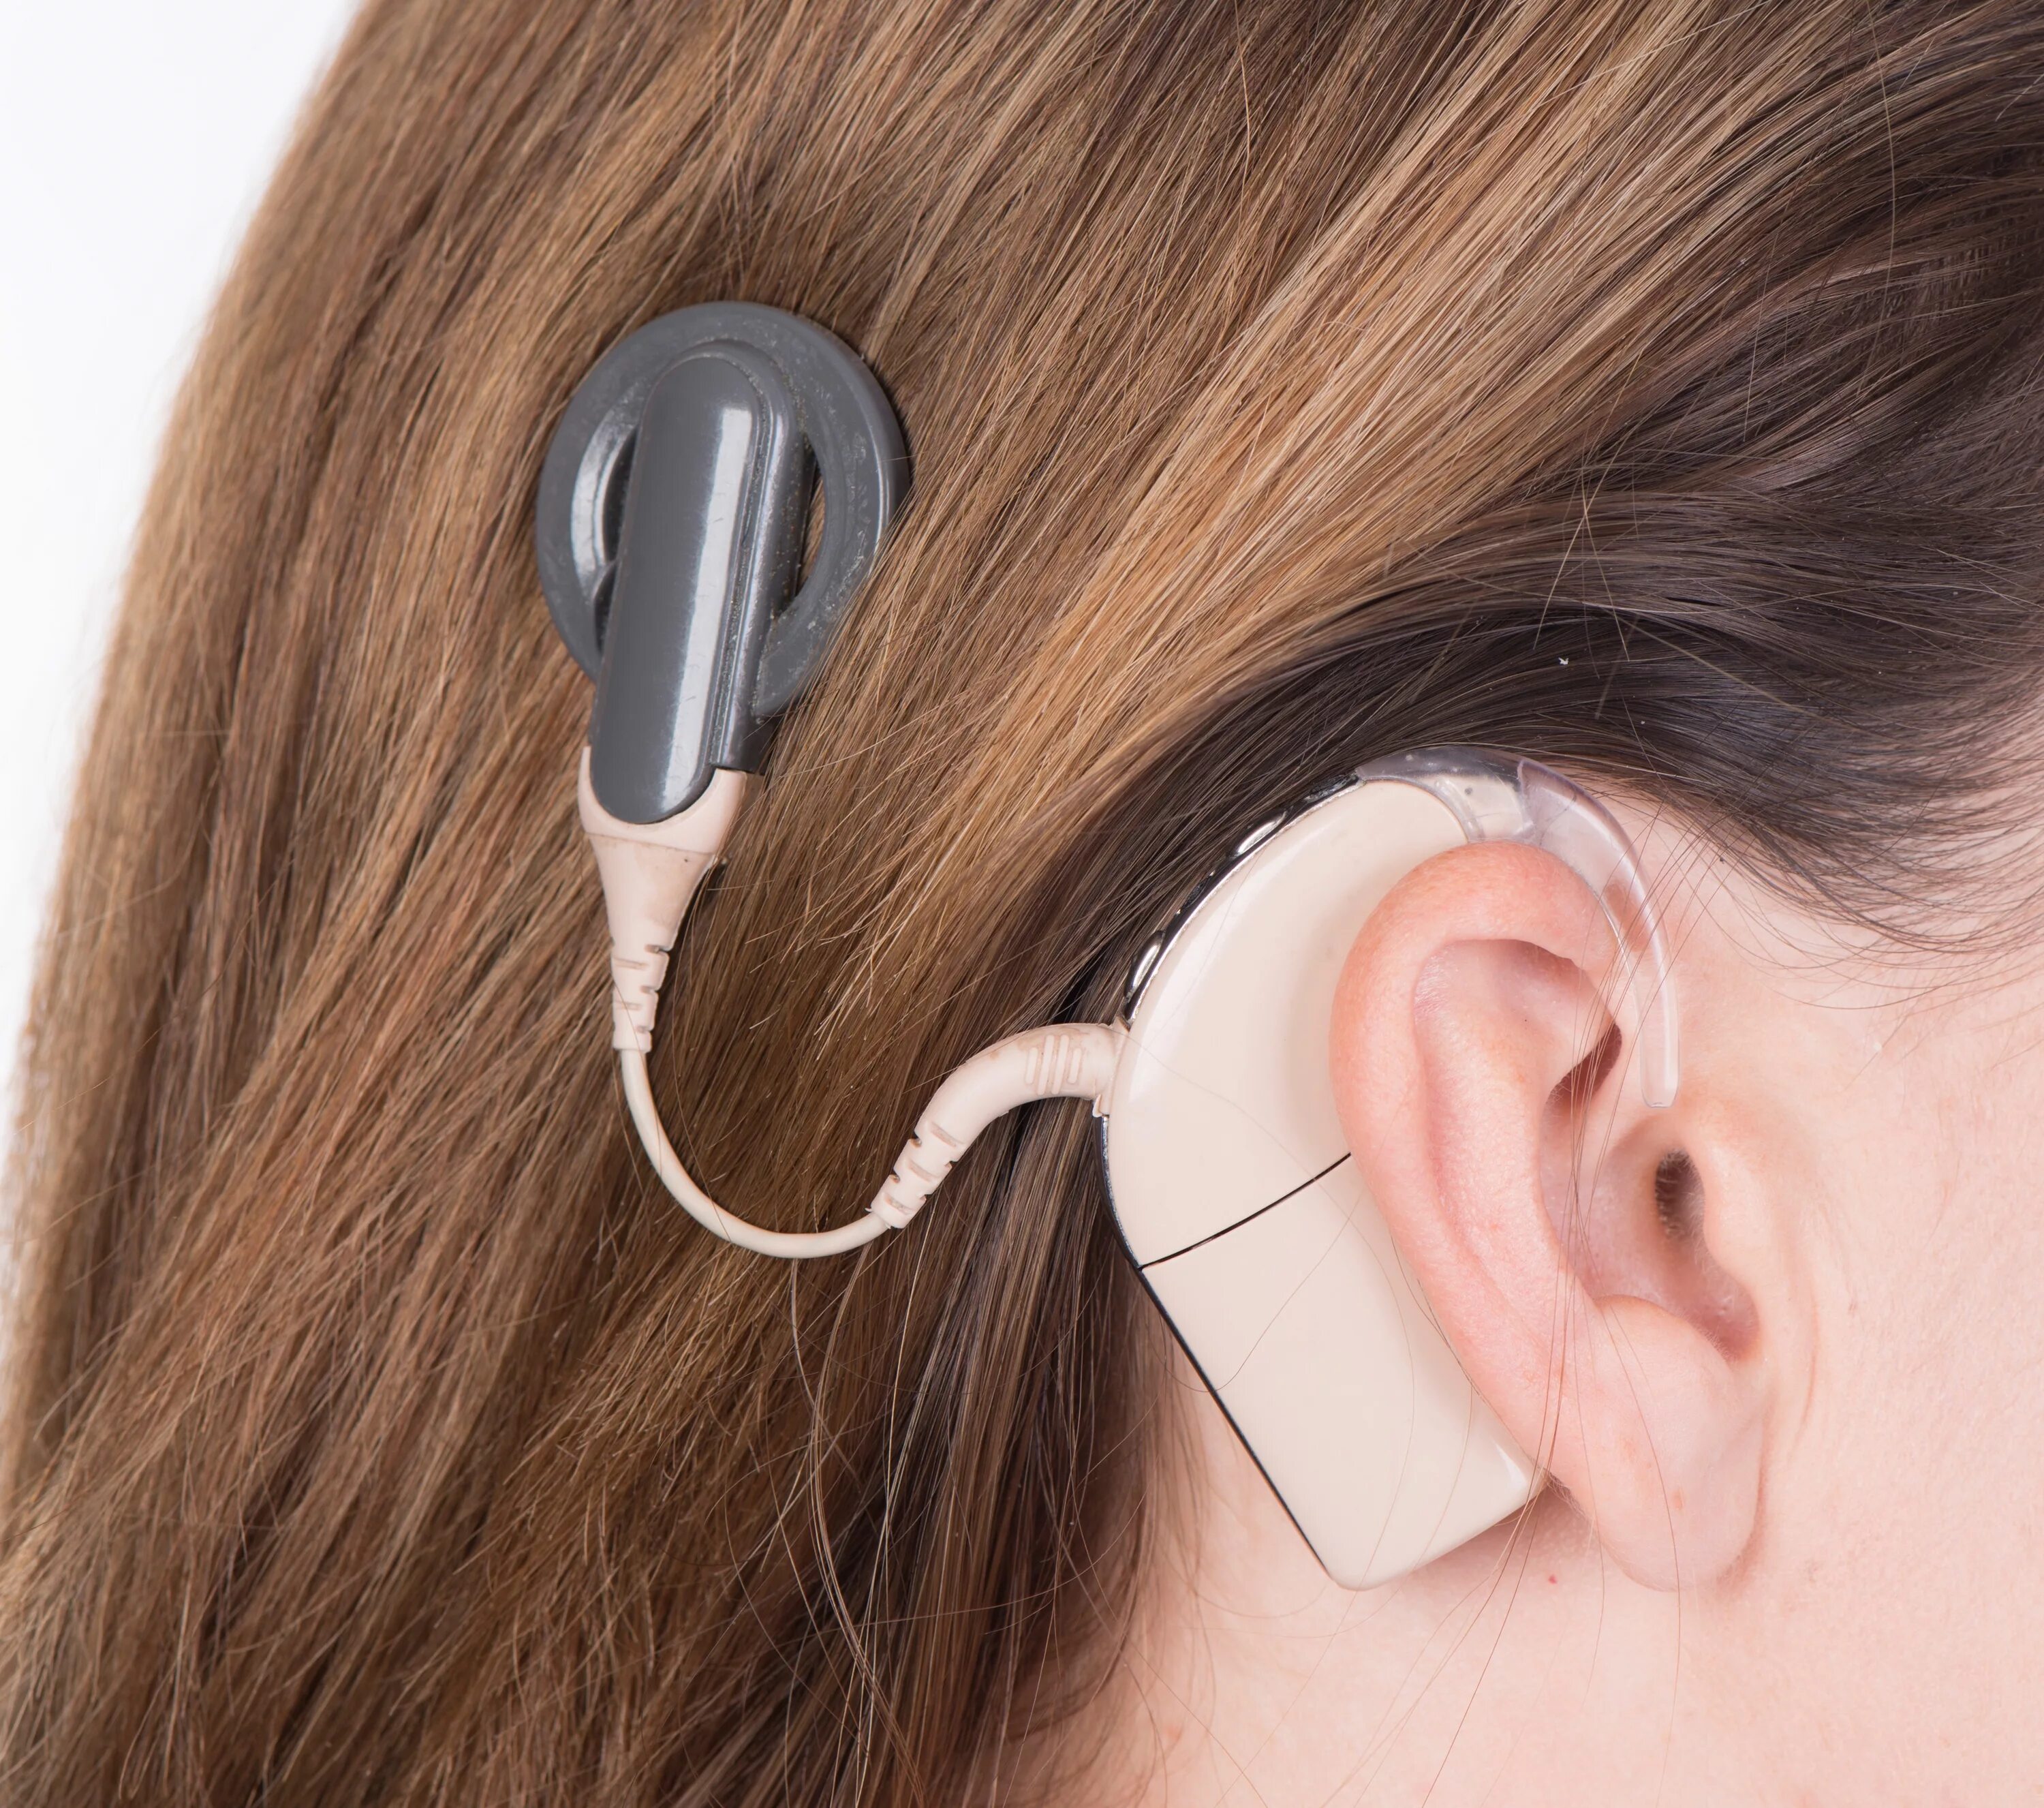 Аппарат Cochlear кохлеарный. Слуховой аппарат кохлеарный имплант. Кохлеарный имплант Кохлер. Аппарат для глухих кохлеарная имплантация.